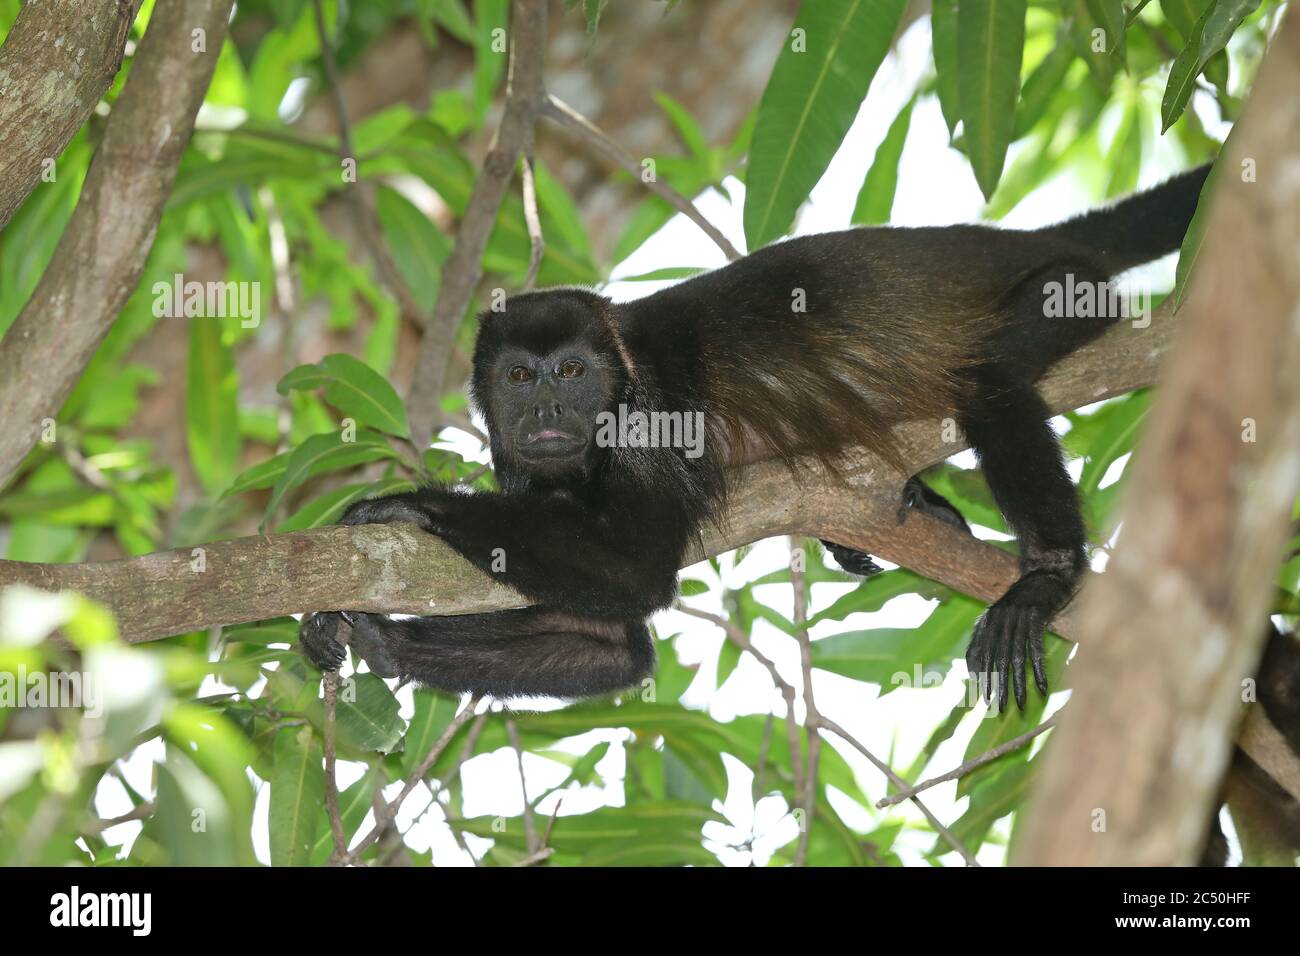 Manlegengeheulter (Alouatta palliata), ruhend auf einem Ast auf einem Baum, Costa Rica Stockfoto